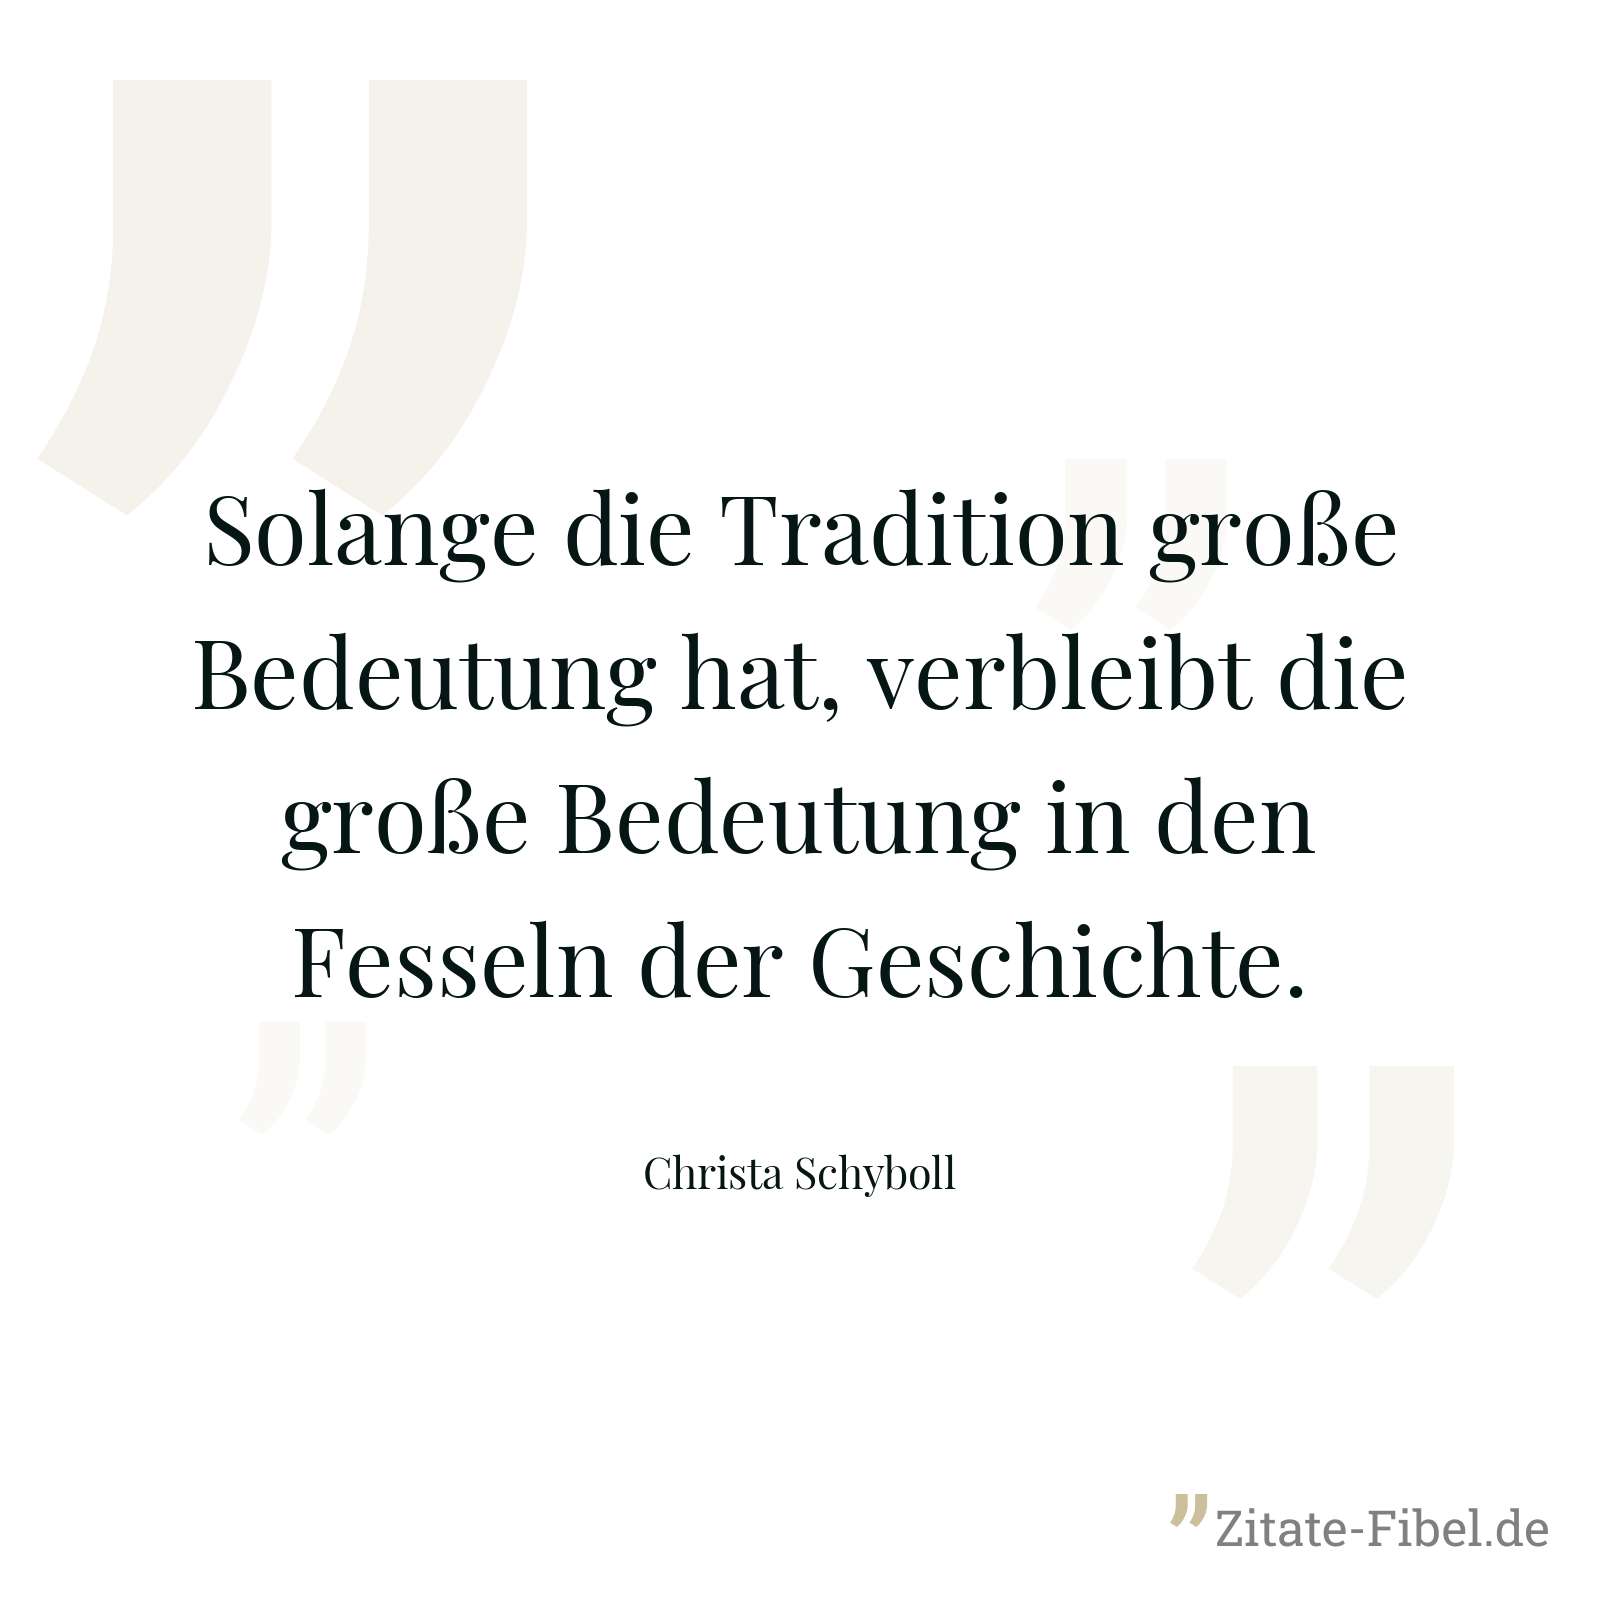 Solange die Tradition große Bedeutung hat, verbleibt die große Bedeutung in den Fesseln der Geschichte. - Christa Schyboll